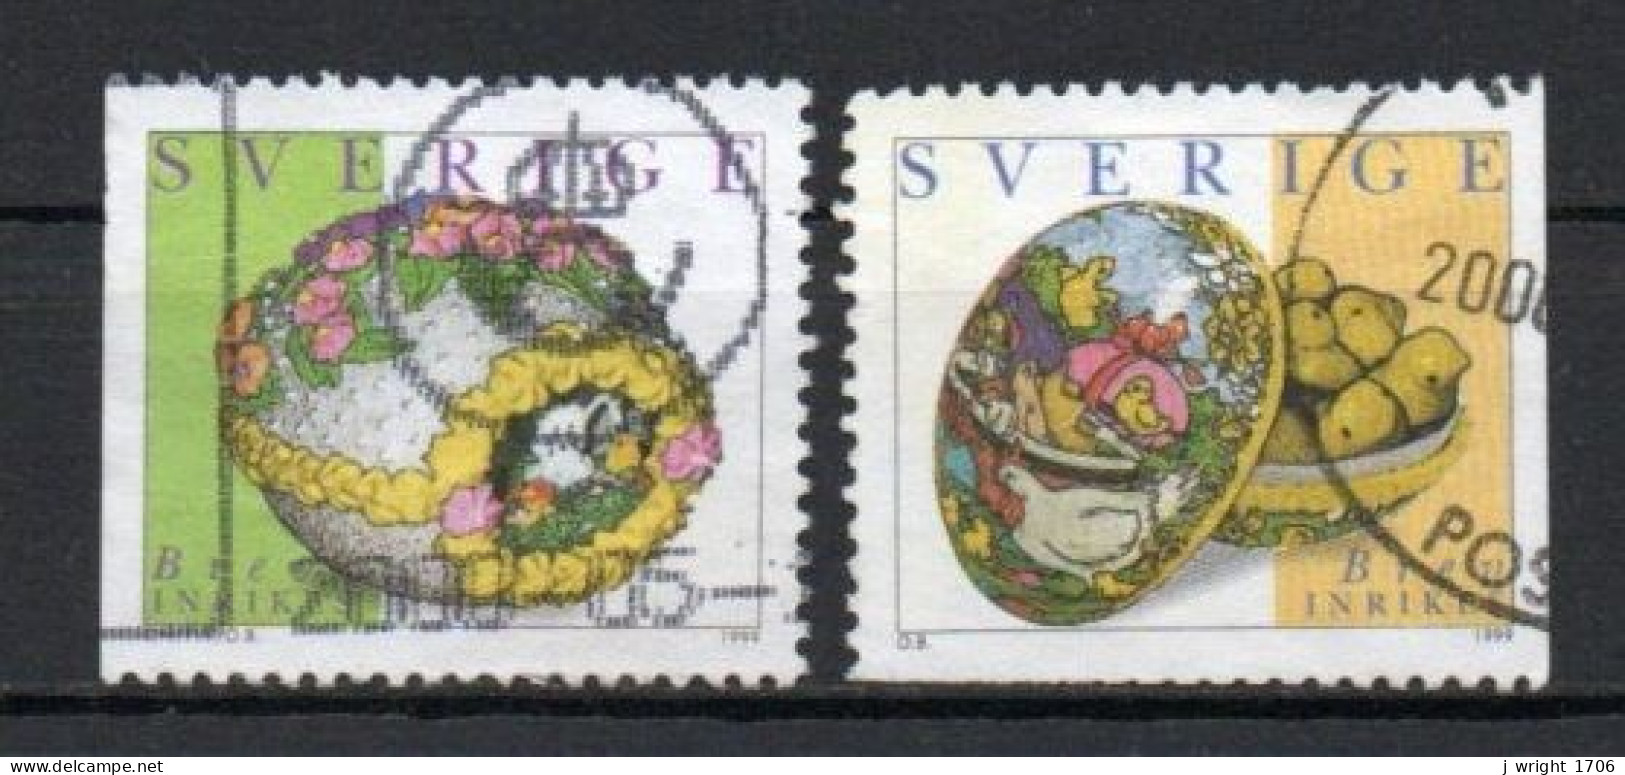 Sweden, 1999, Easter Stamps, Set, USED - Usati